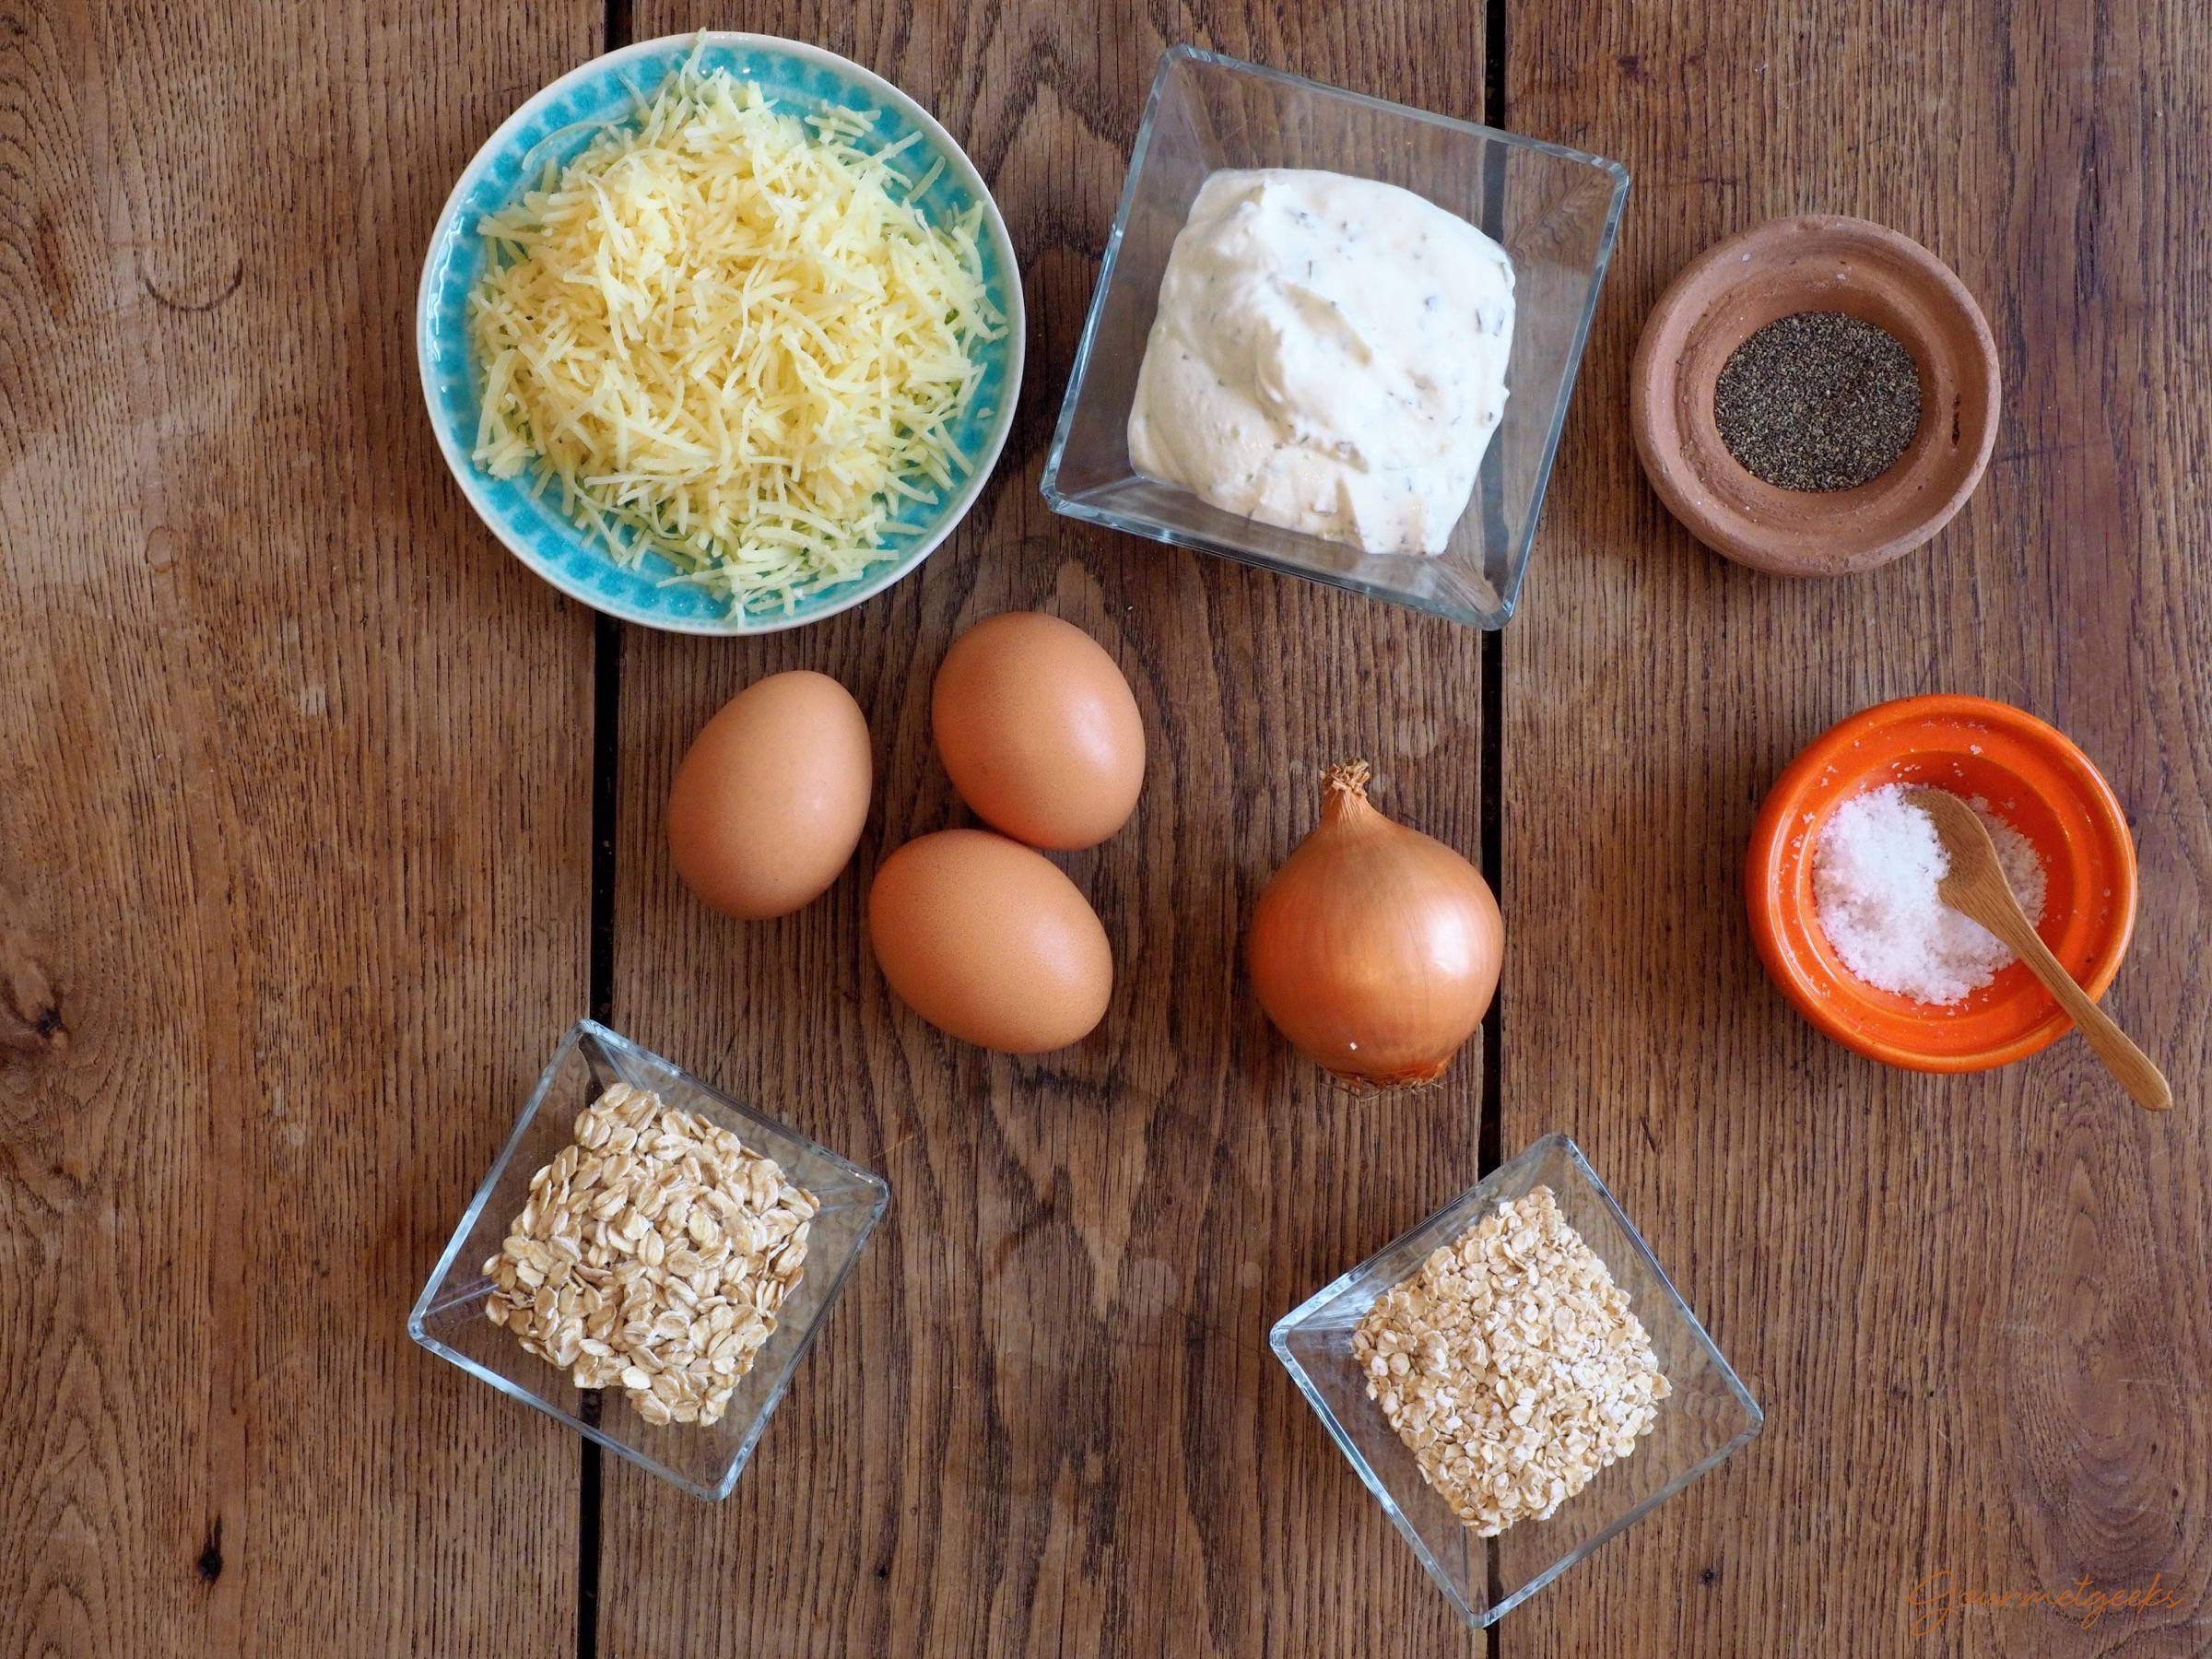 Die Zutaten: Eier, Kräuterquark, kernige & feine Haferflocken, geriebener Käse, eine Zwiebel, Pfeffer, Salz